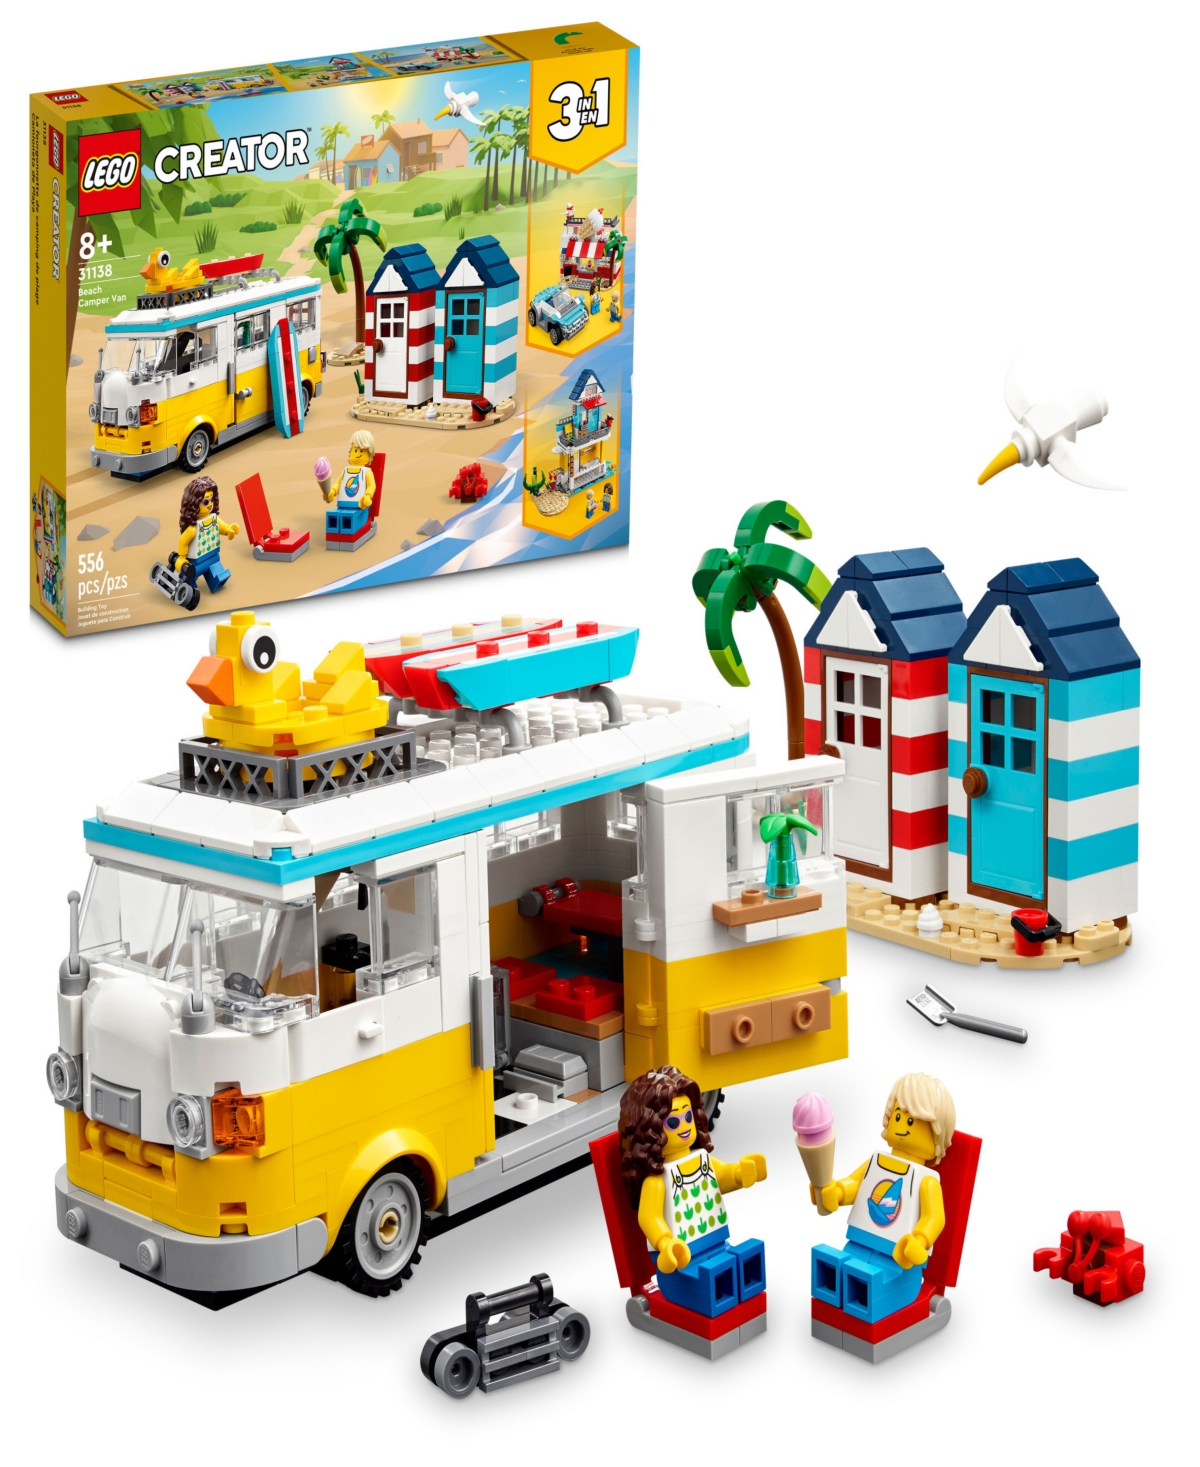 Lego Creator 31138 3-in-1 Beach Camper Van Toy Adventure Building Set In Multicolor